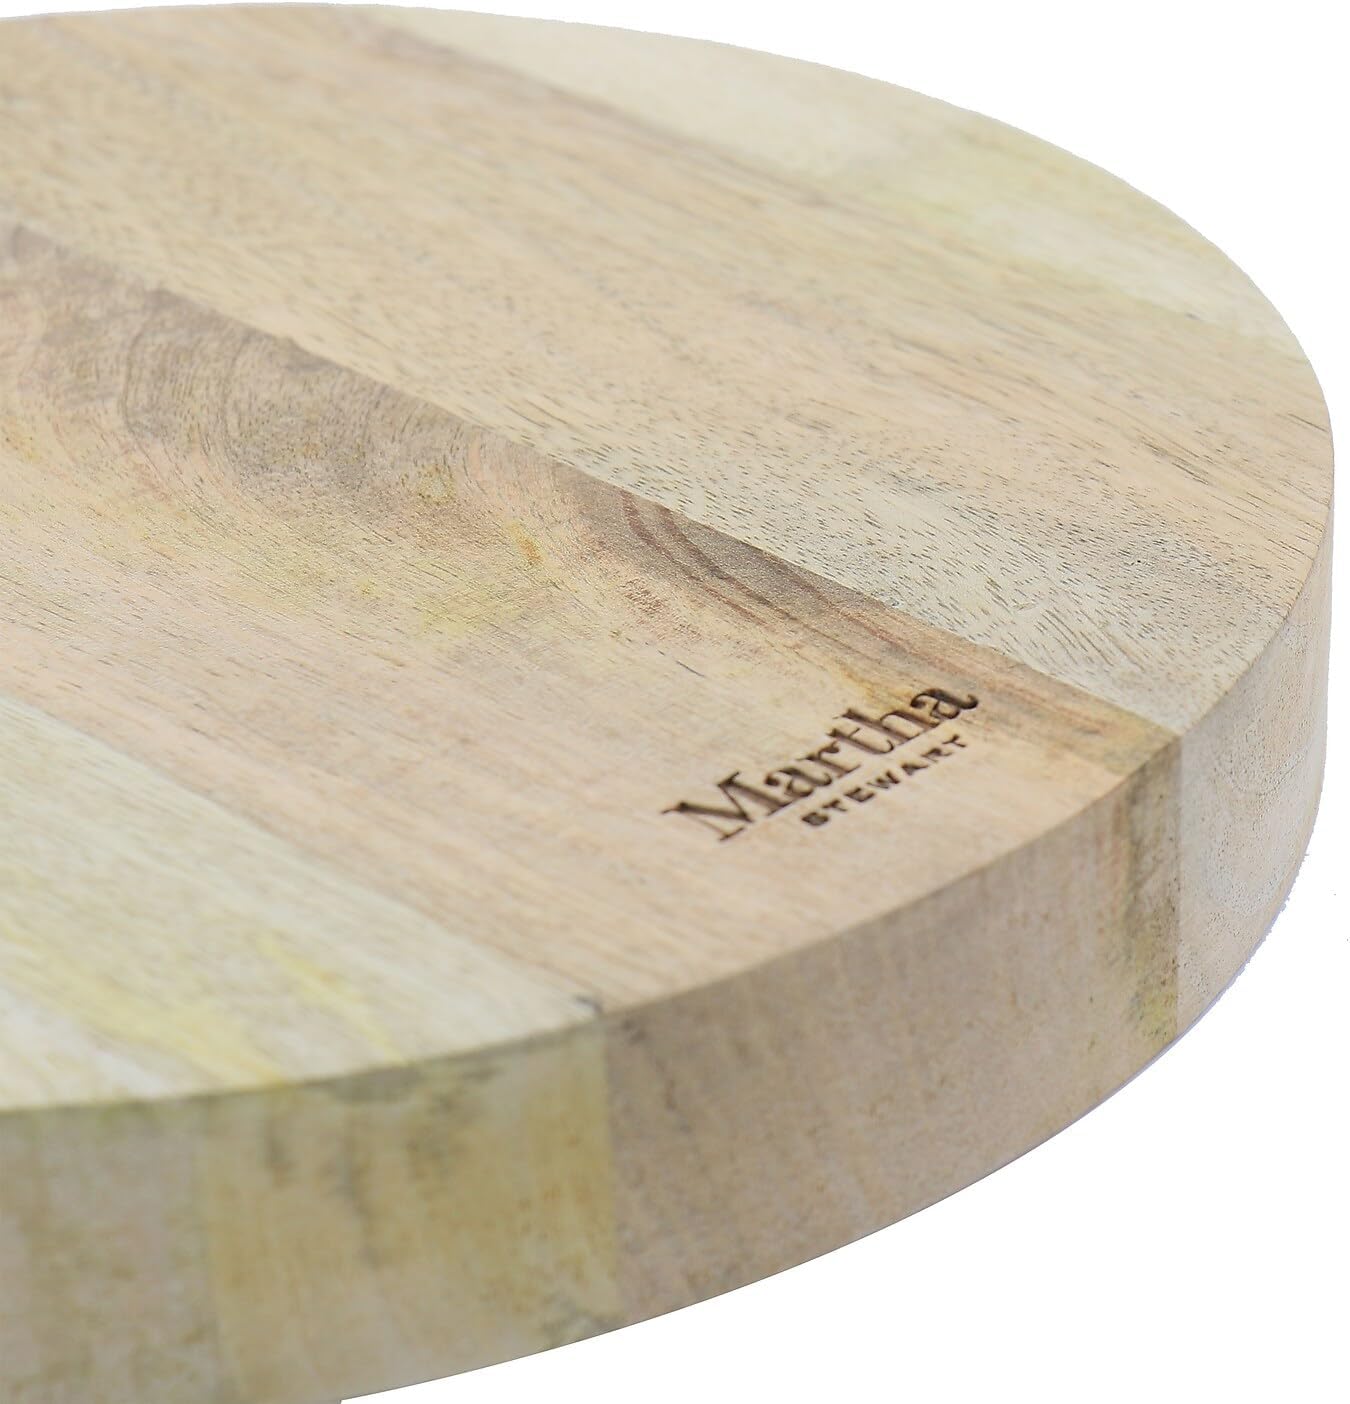 Martha Stewart Mango Wood Cutting Board